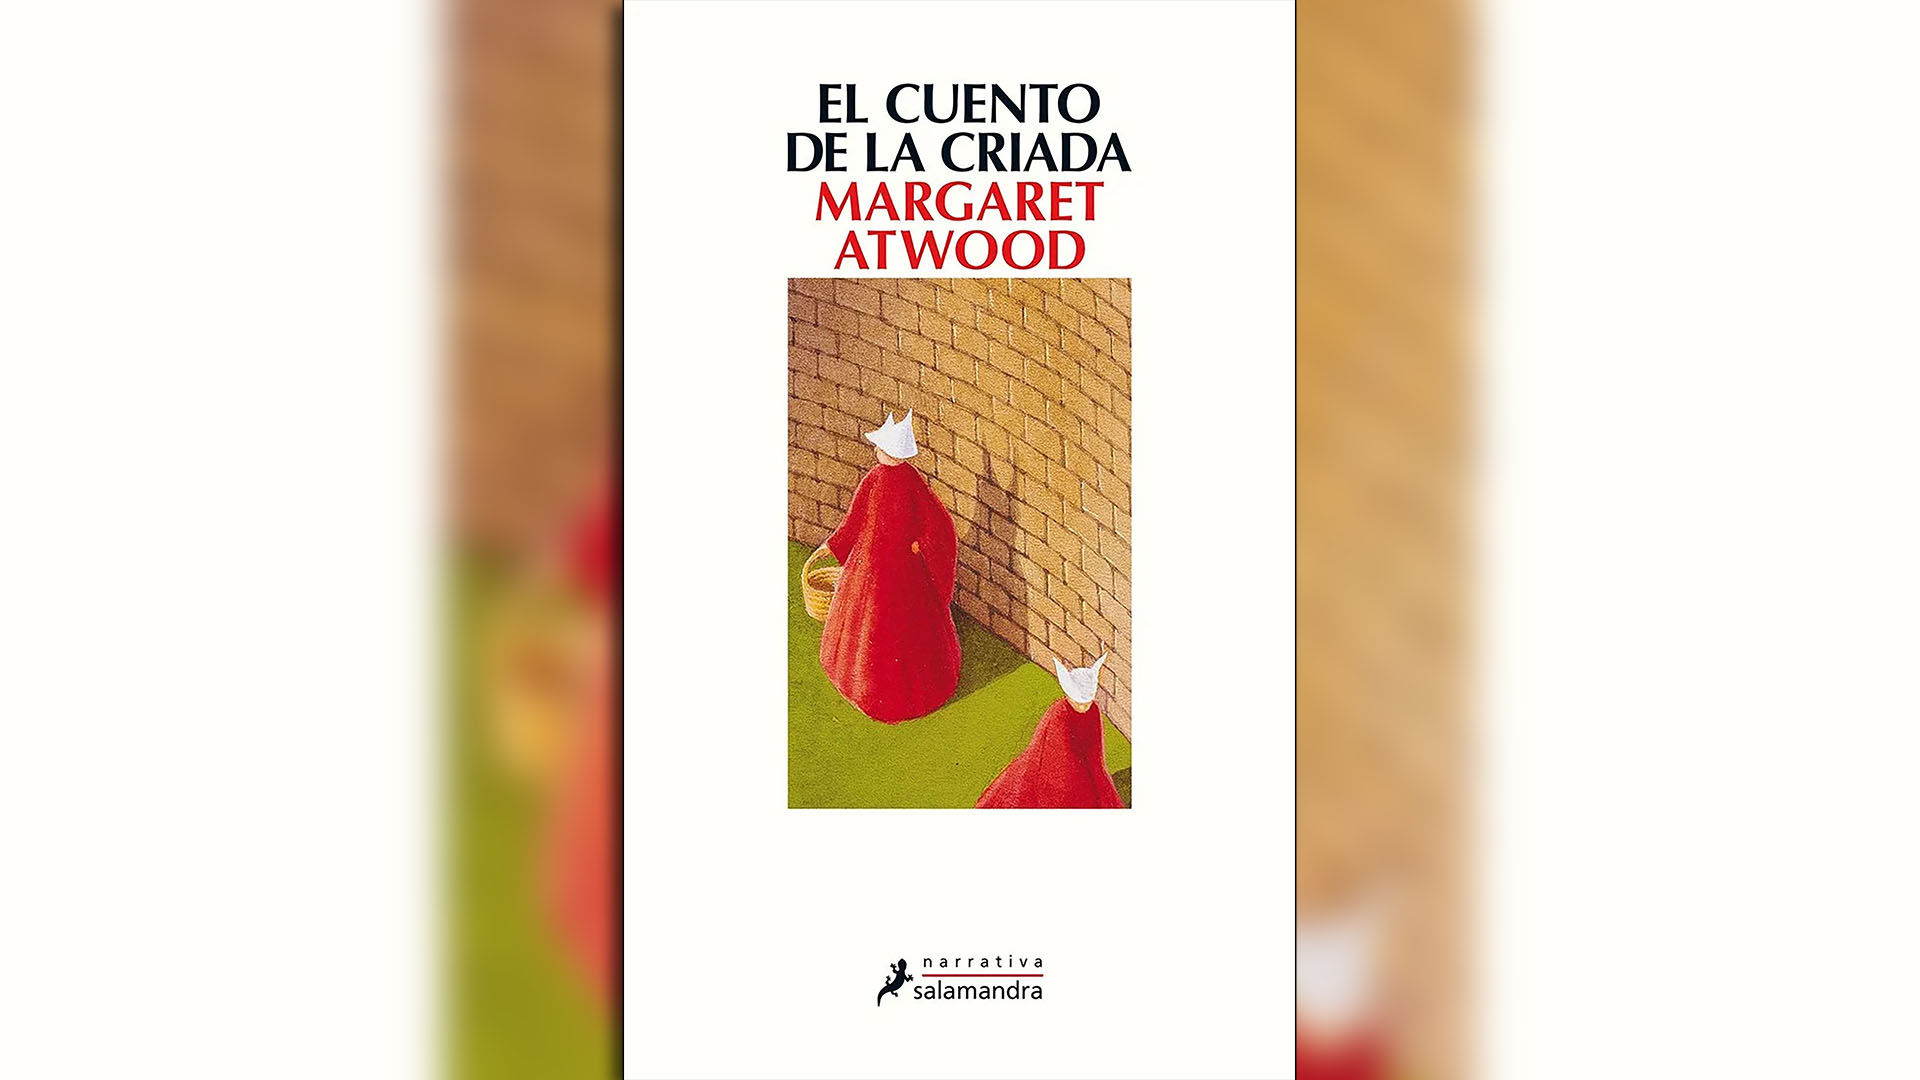 "El cuento de la criada", de Margaret Atwood, fue retirado de circulación en el estado de Florida